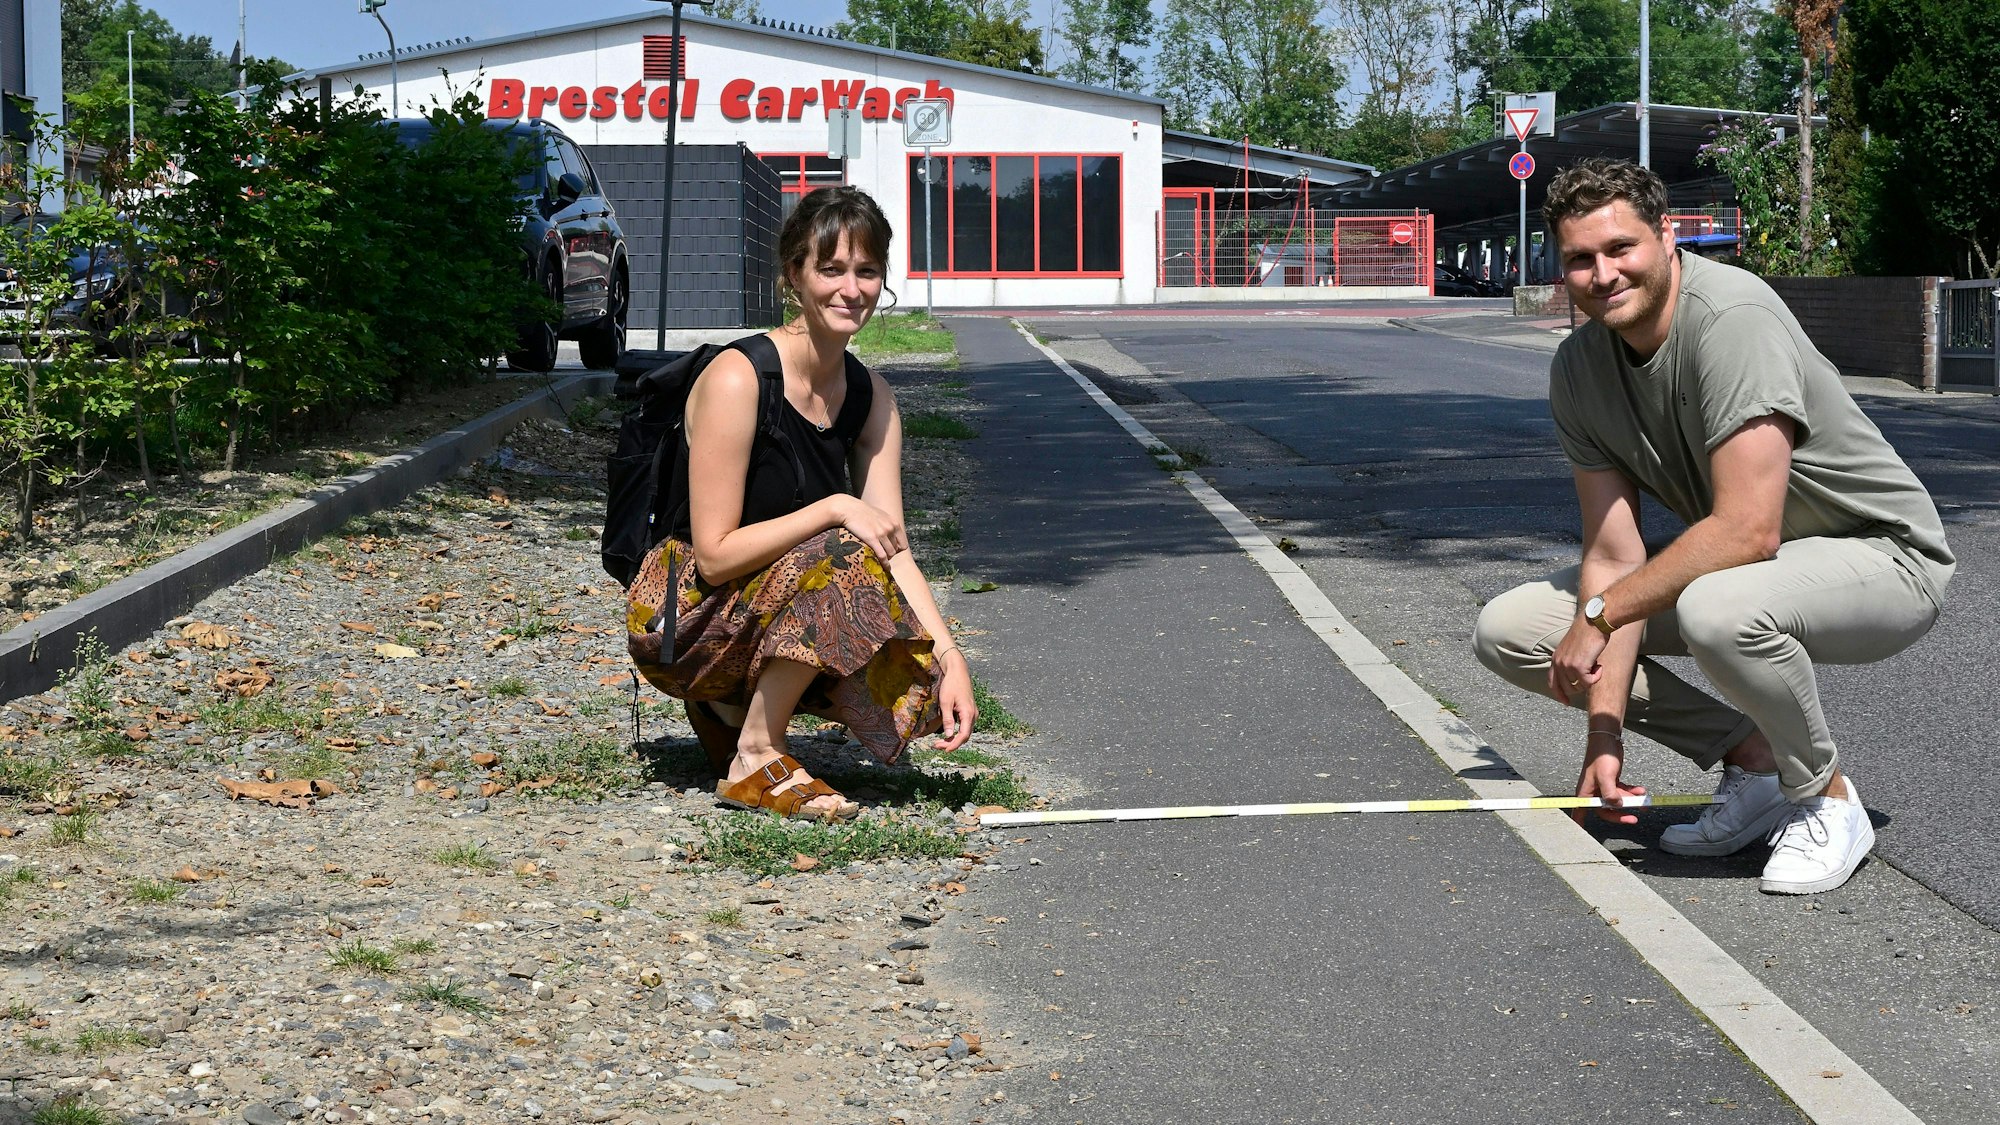 Die Gladbacher Fuß- und Radverkehrsbeauftragte Maren Hesselmann und der Mobilitätsmanager Jonathan Benninghaus zeigen, wie wenig Platz Fußgänger oft haben.